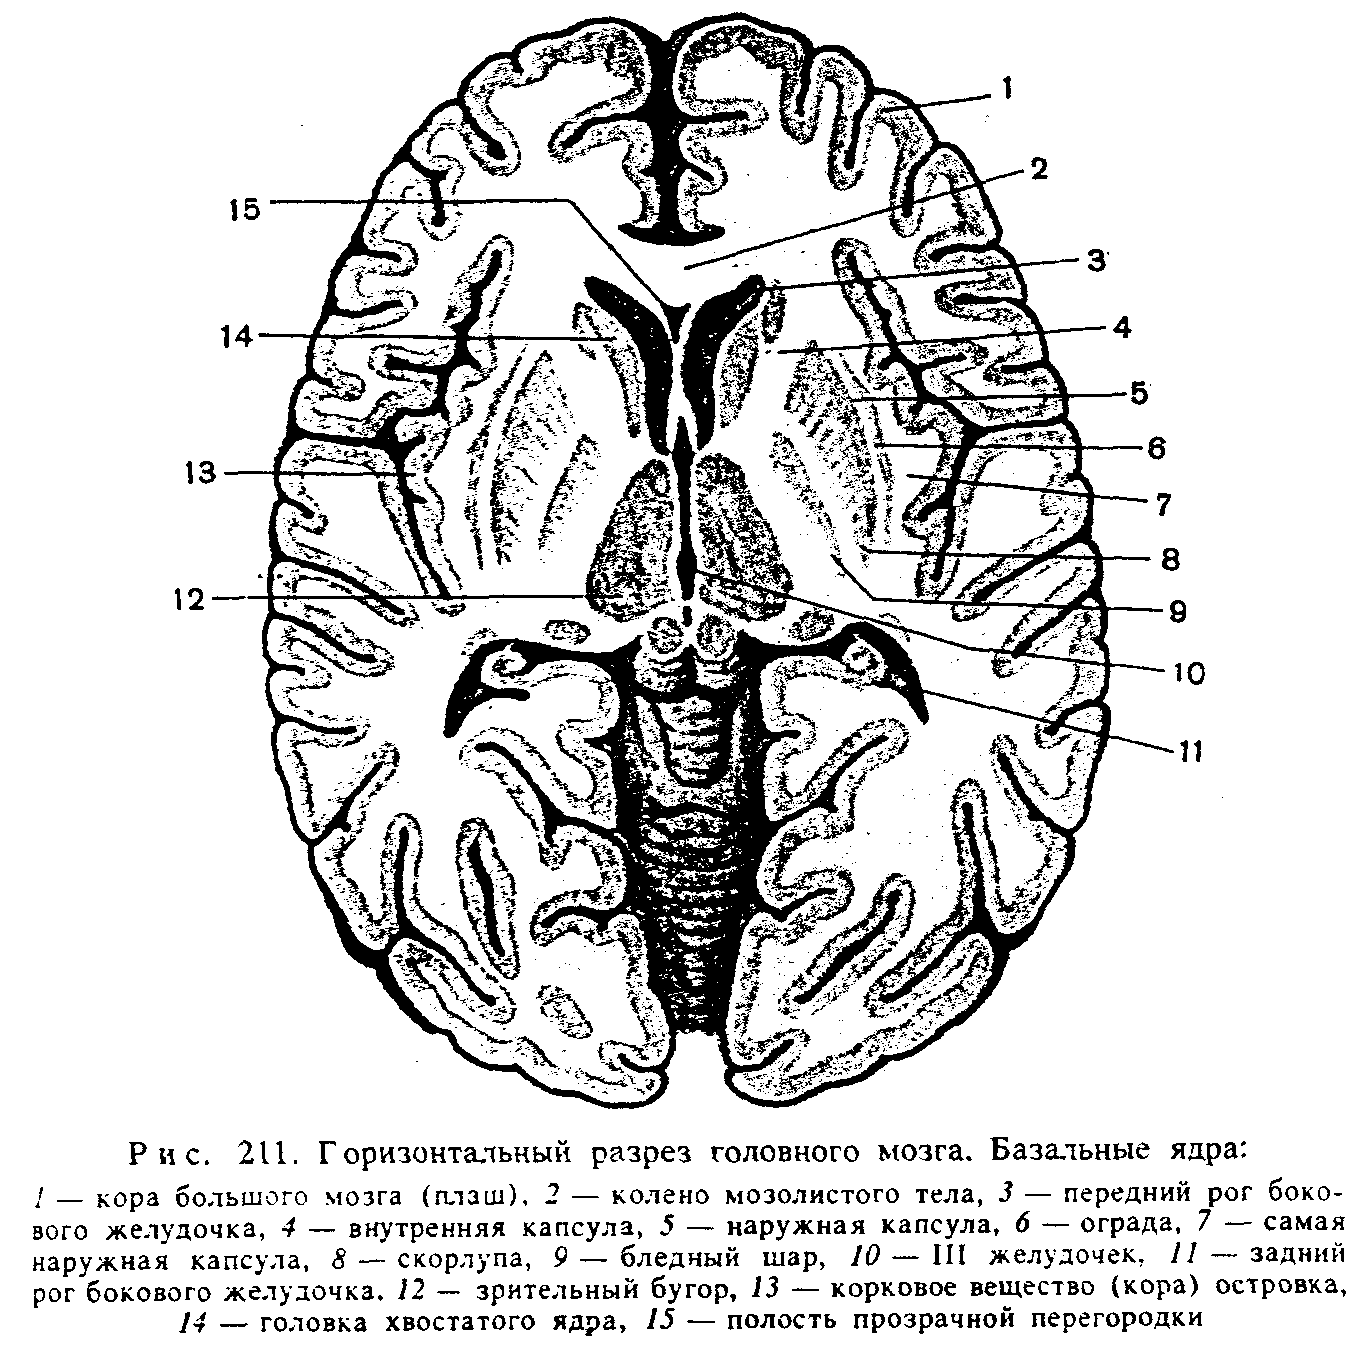 Хвостатое ядро мозга. Горизонтальный разрез головного мозга базальные ядра. Головка хвостатого ядра головного мозга. Хвостатое ядро головного мозга анатомия. Схема базальных ядер головного мозга.